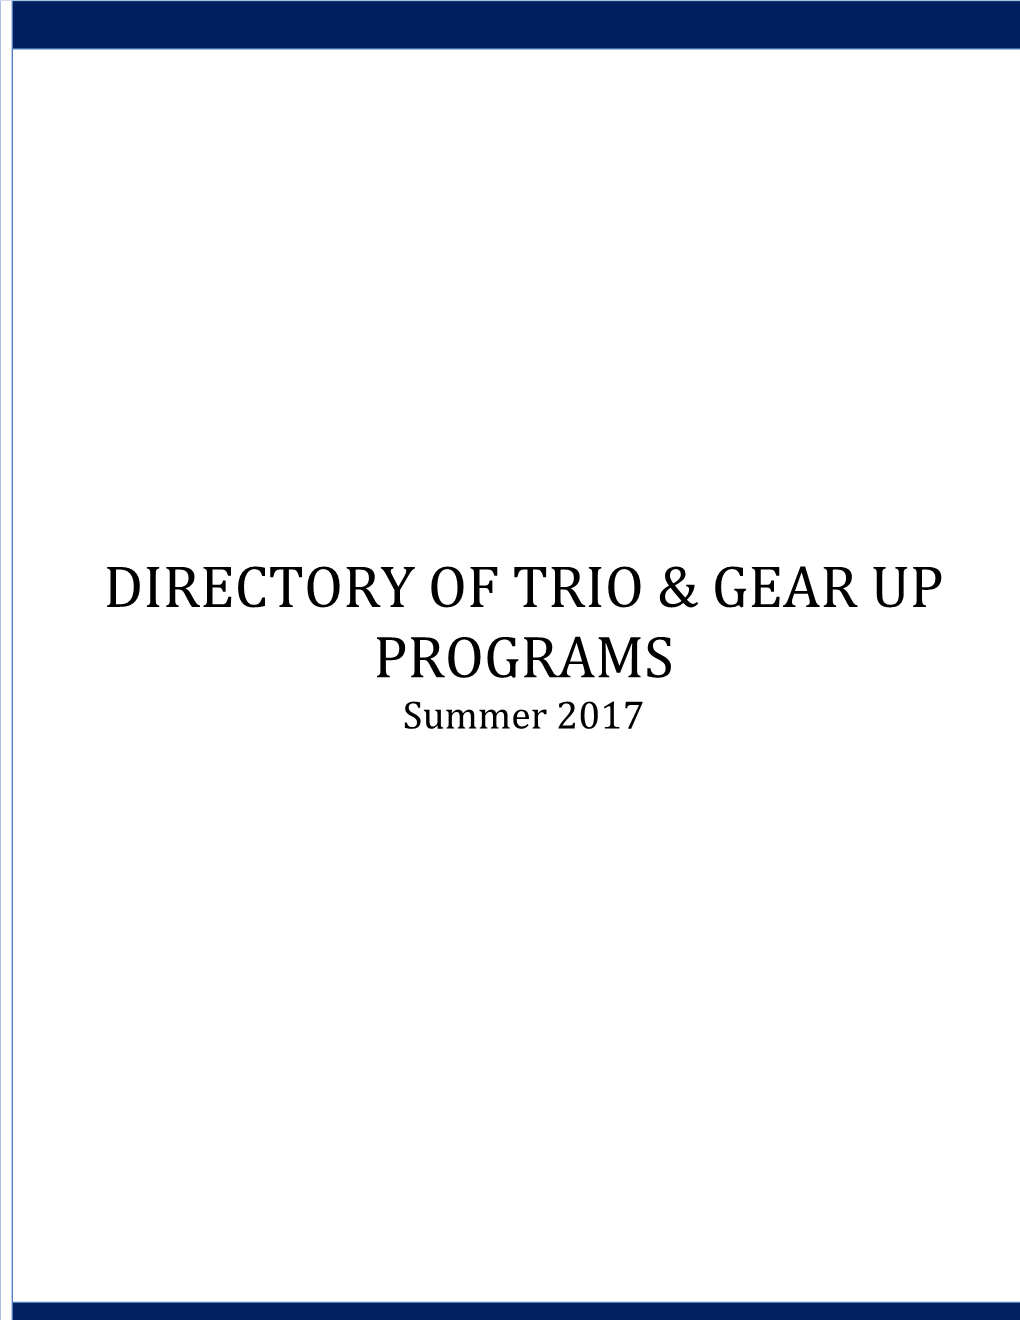 Directory of Trio & Gear up Programs